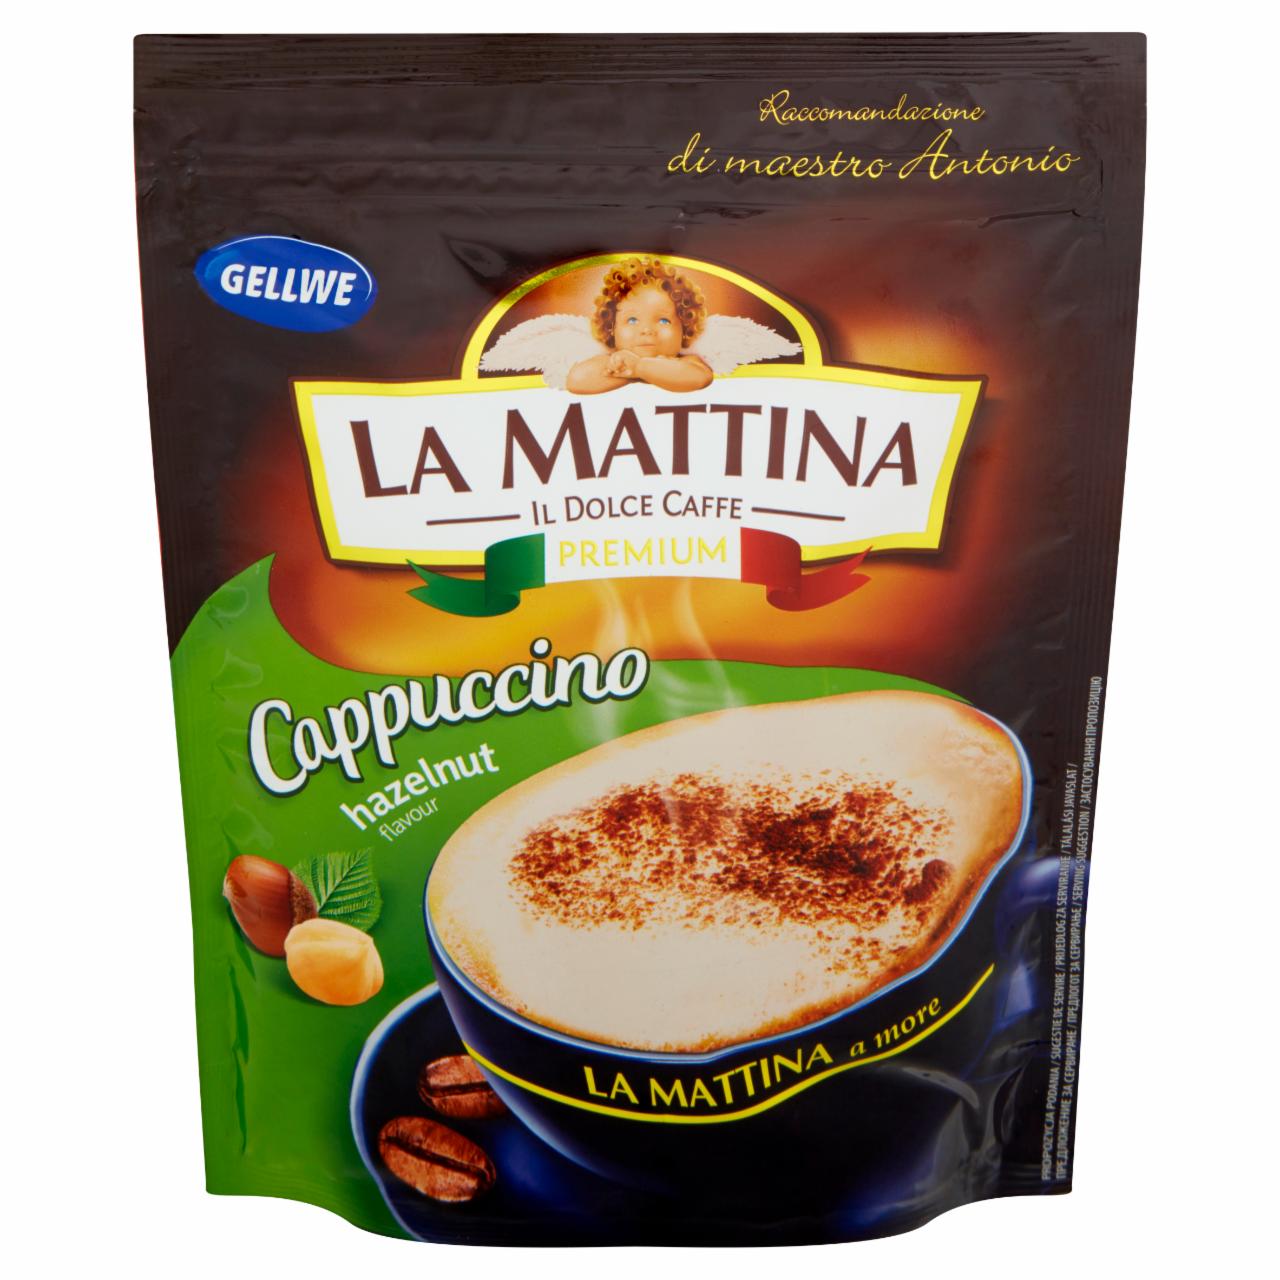 Zdjęcia - Gellwe La Mattina Napój kawowy Cappuccino o smaku orzechowym 100 g